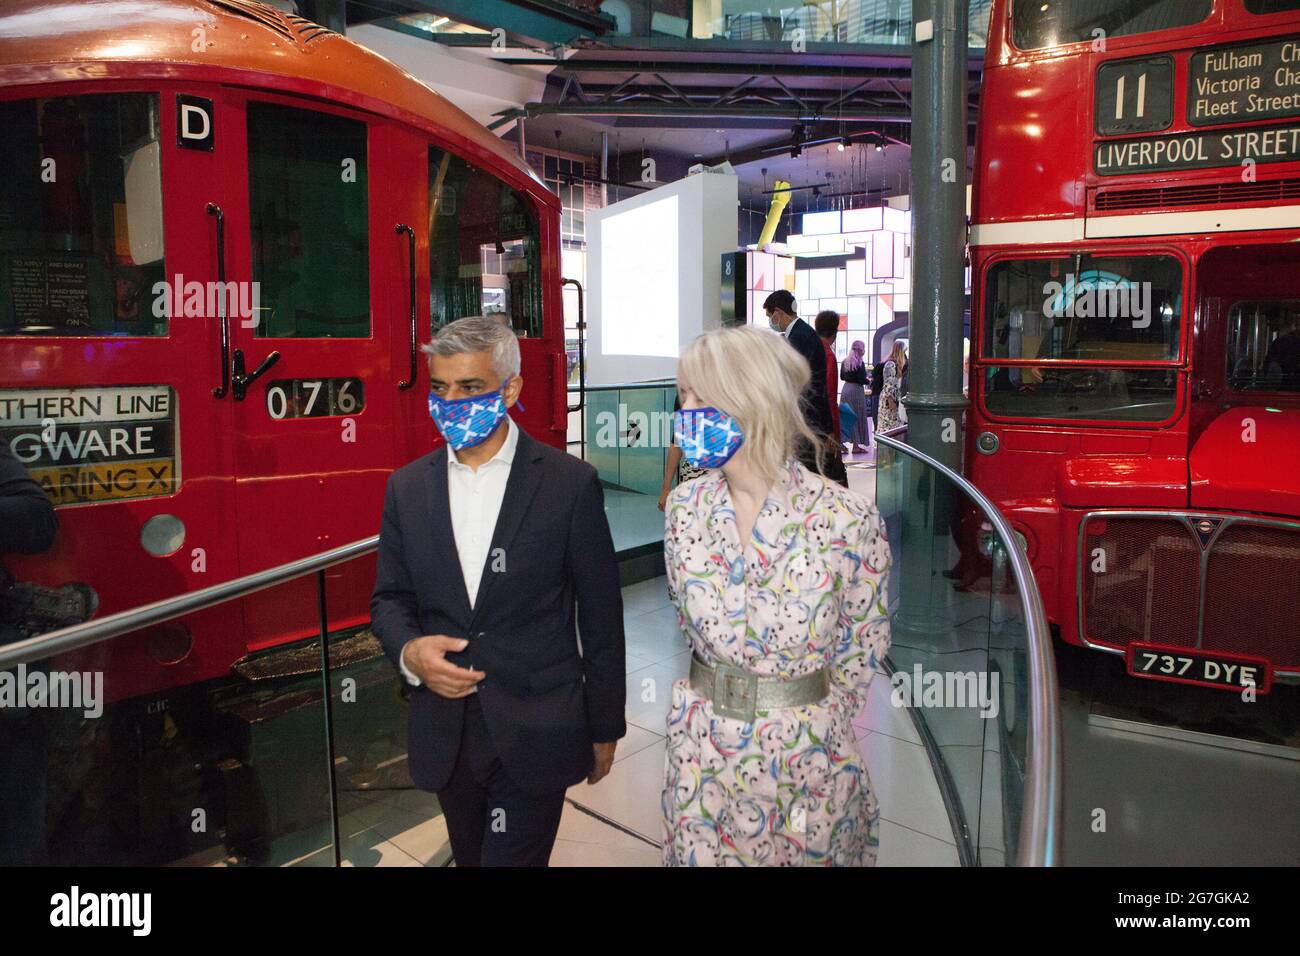 Londres, Royaume-Uni, 14 juillet 2021 : le maire de Londres, Sadiq Khan, a visité Covent Garden et le London transport Museum ce matin pour lancer sa campagne #LetsDoLondon. L'objectif est d'encourager les touristes à visiter le centre de Londres. Comme lui et transport for London rendent les masques obligatoires dans le métro londonien, on espère que les touristes pourront visiter en toute sécurité malgré l'augmentation du nombre de coronavirus. Au musée, il s'est assis dans le siège conducteur d'un autobus, ce qui rend hommage au travail de son père en tant que chauffeur d'autobus. Il était accompagné de Justine Simons (Maire adjointe pour la culture et les industries créatives) et de Sam Mullins (Directeur du Lon Banque D'Images